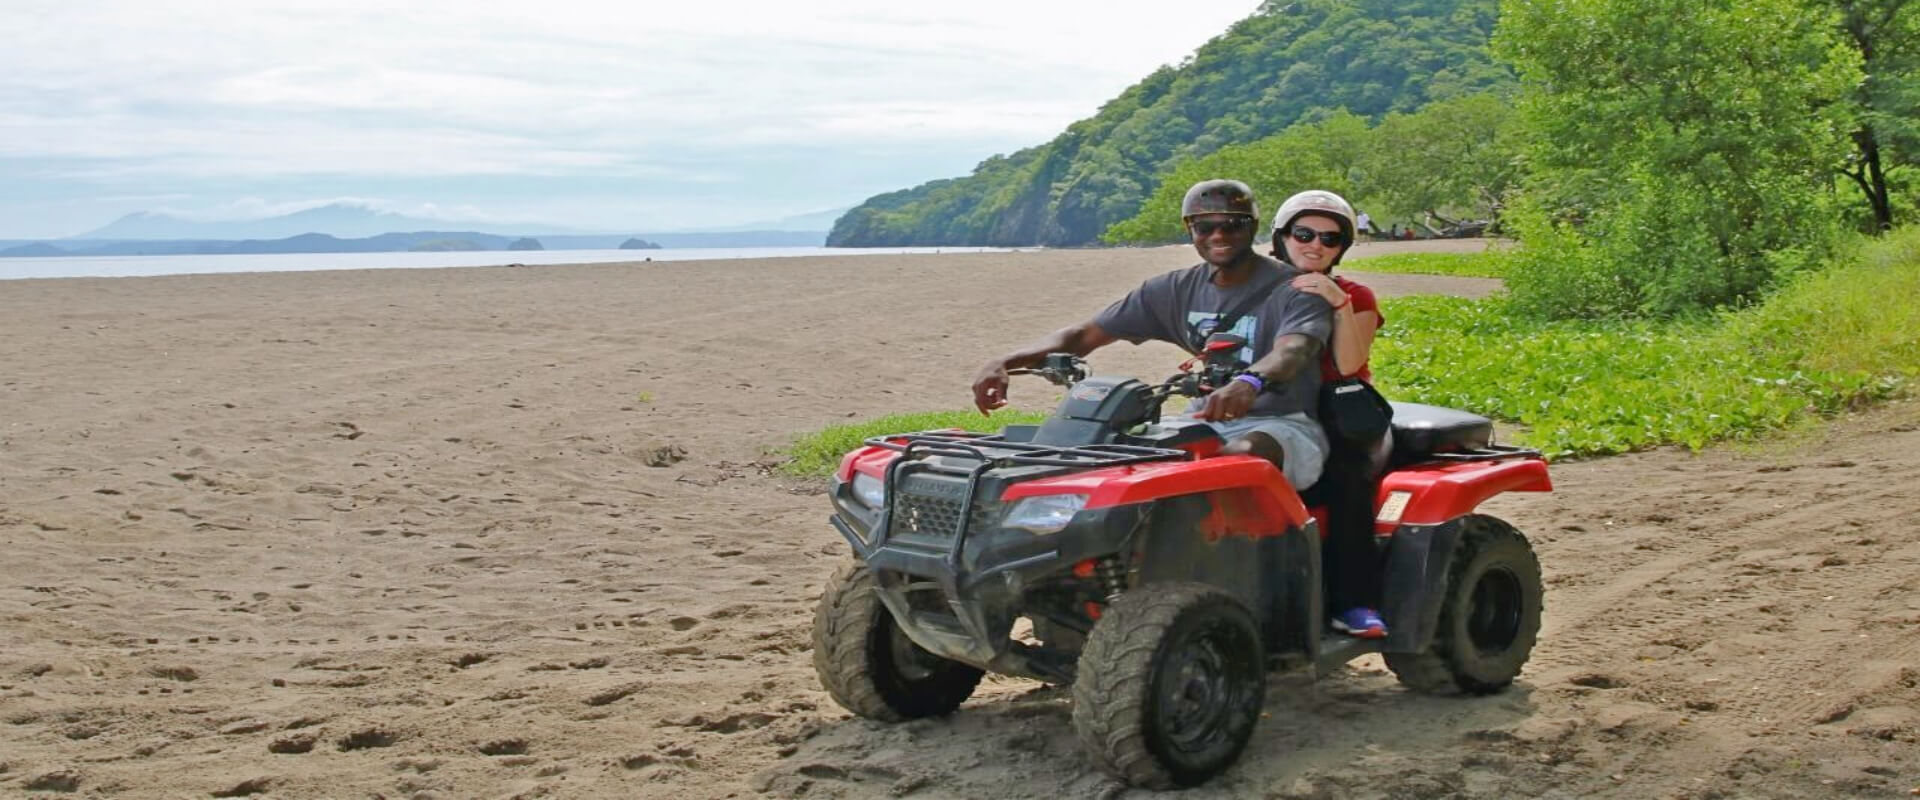 Aventura ATV en Diamante Adventure Park | Costa Rica Jade Tours